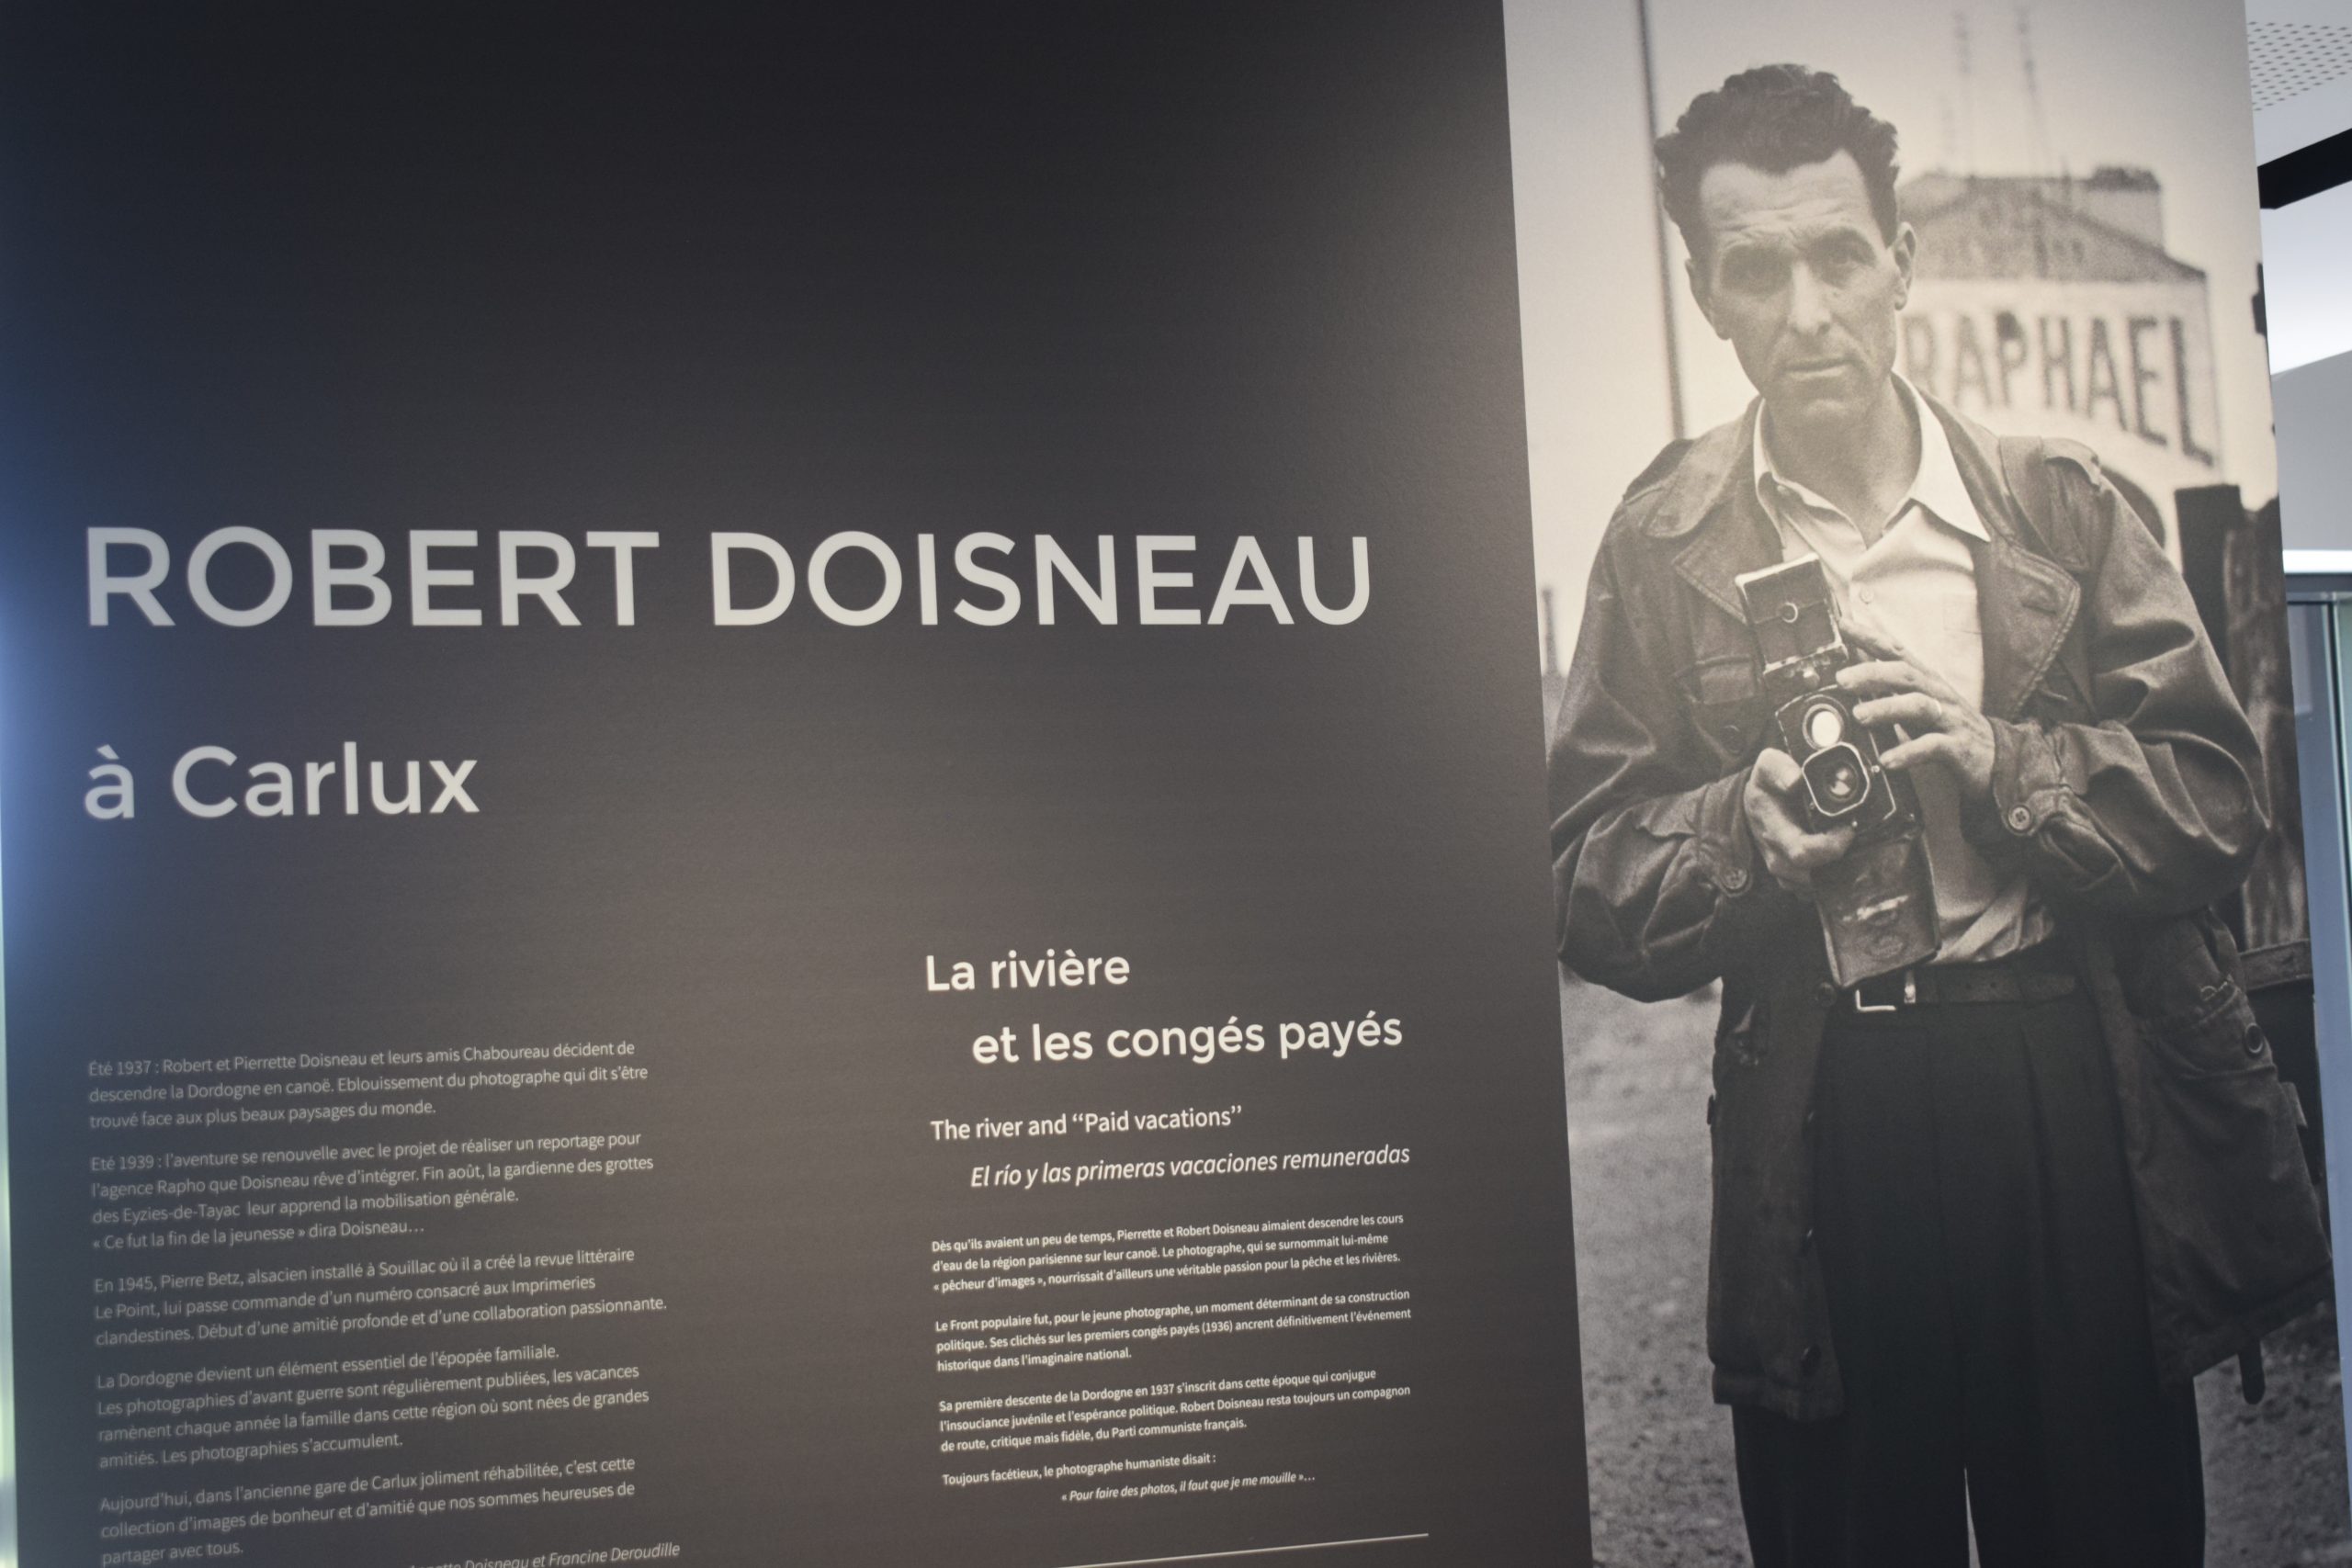 La galerie d'art photographique consacrée à Robert Doisneau s'ouvre au rez-de-chaussée par une large photo du photographe, accompagné d'un texte écrit par ses propres filles, expliquant sa venue en Dordogne et son attachement au territoire.